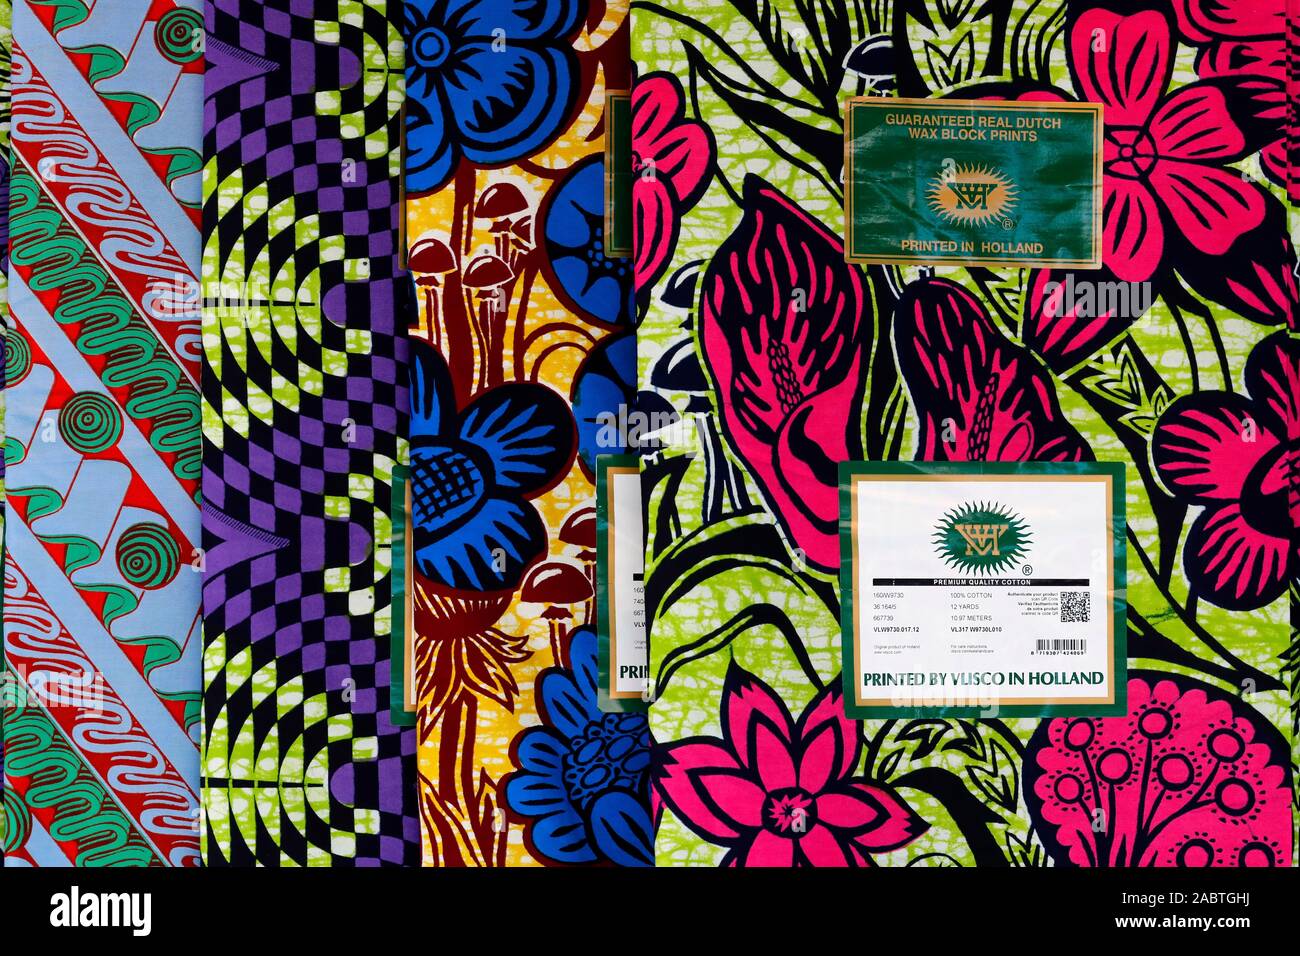 Importierte holländische Wachs drucken Gewebe für traditionelle afrikanische Kleidung. Lome. Togo. Stockfoto